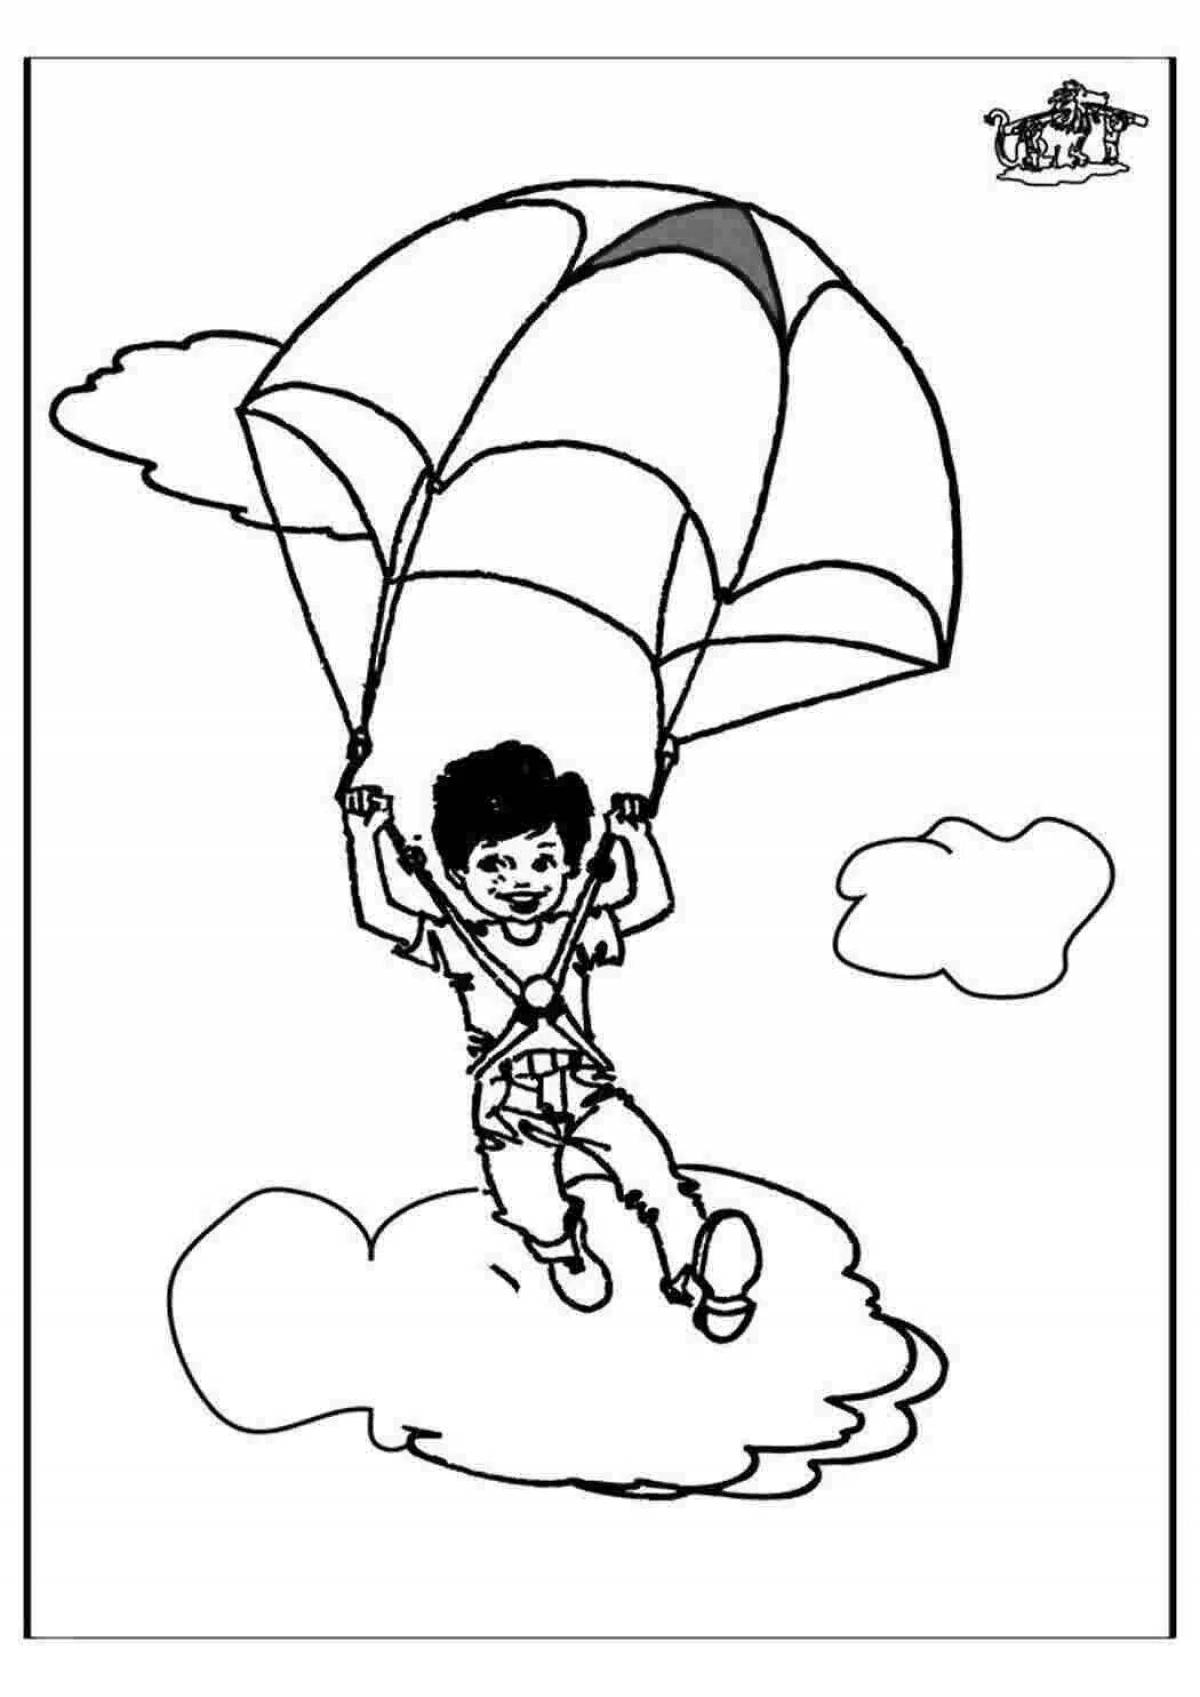 Великолепная раскраска парашюта для детей